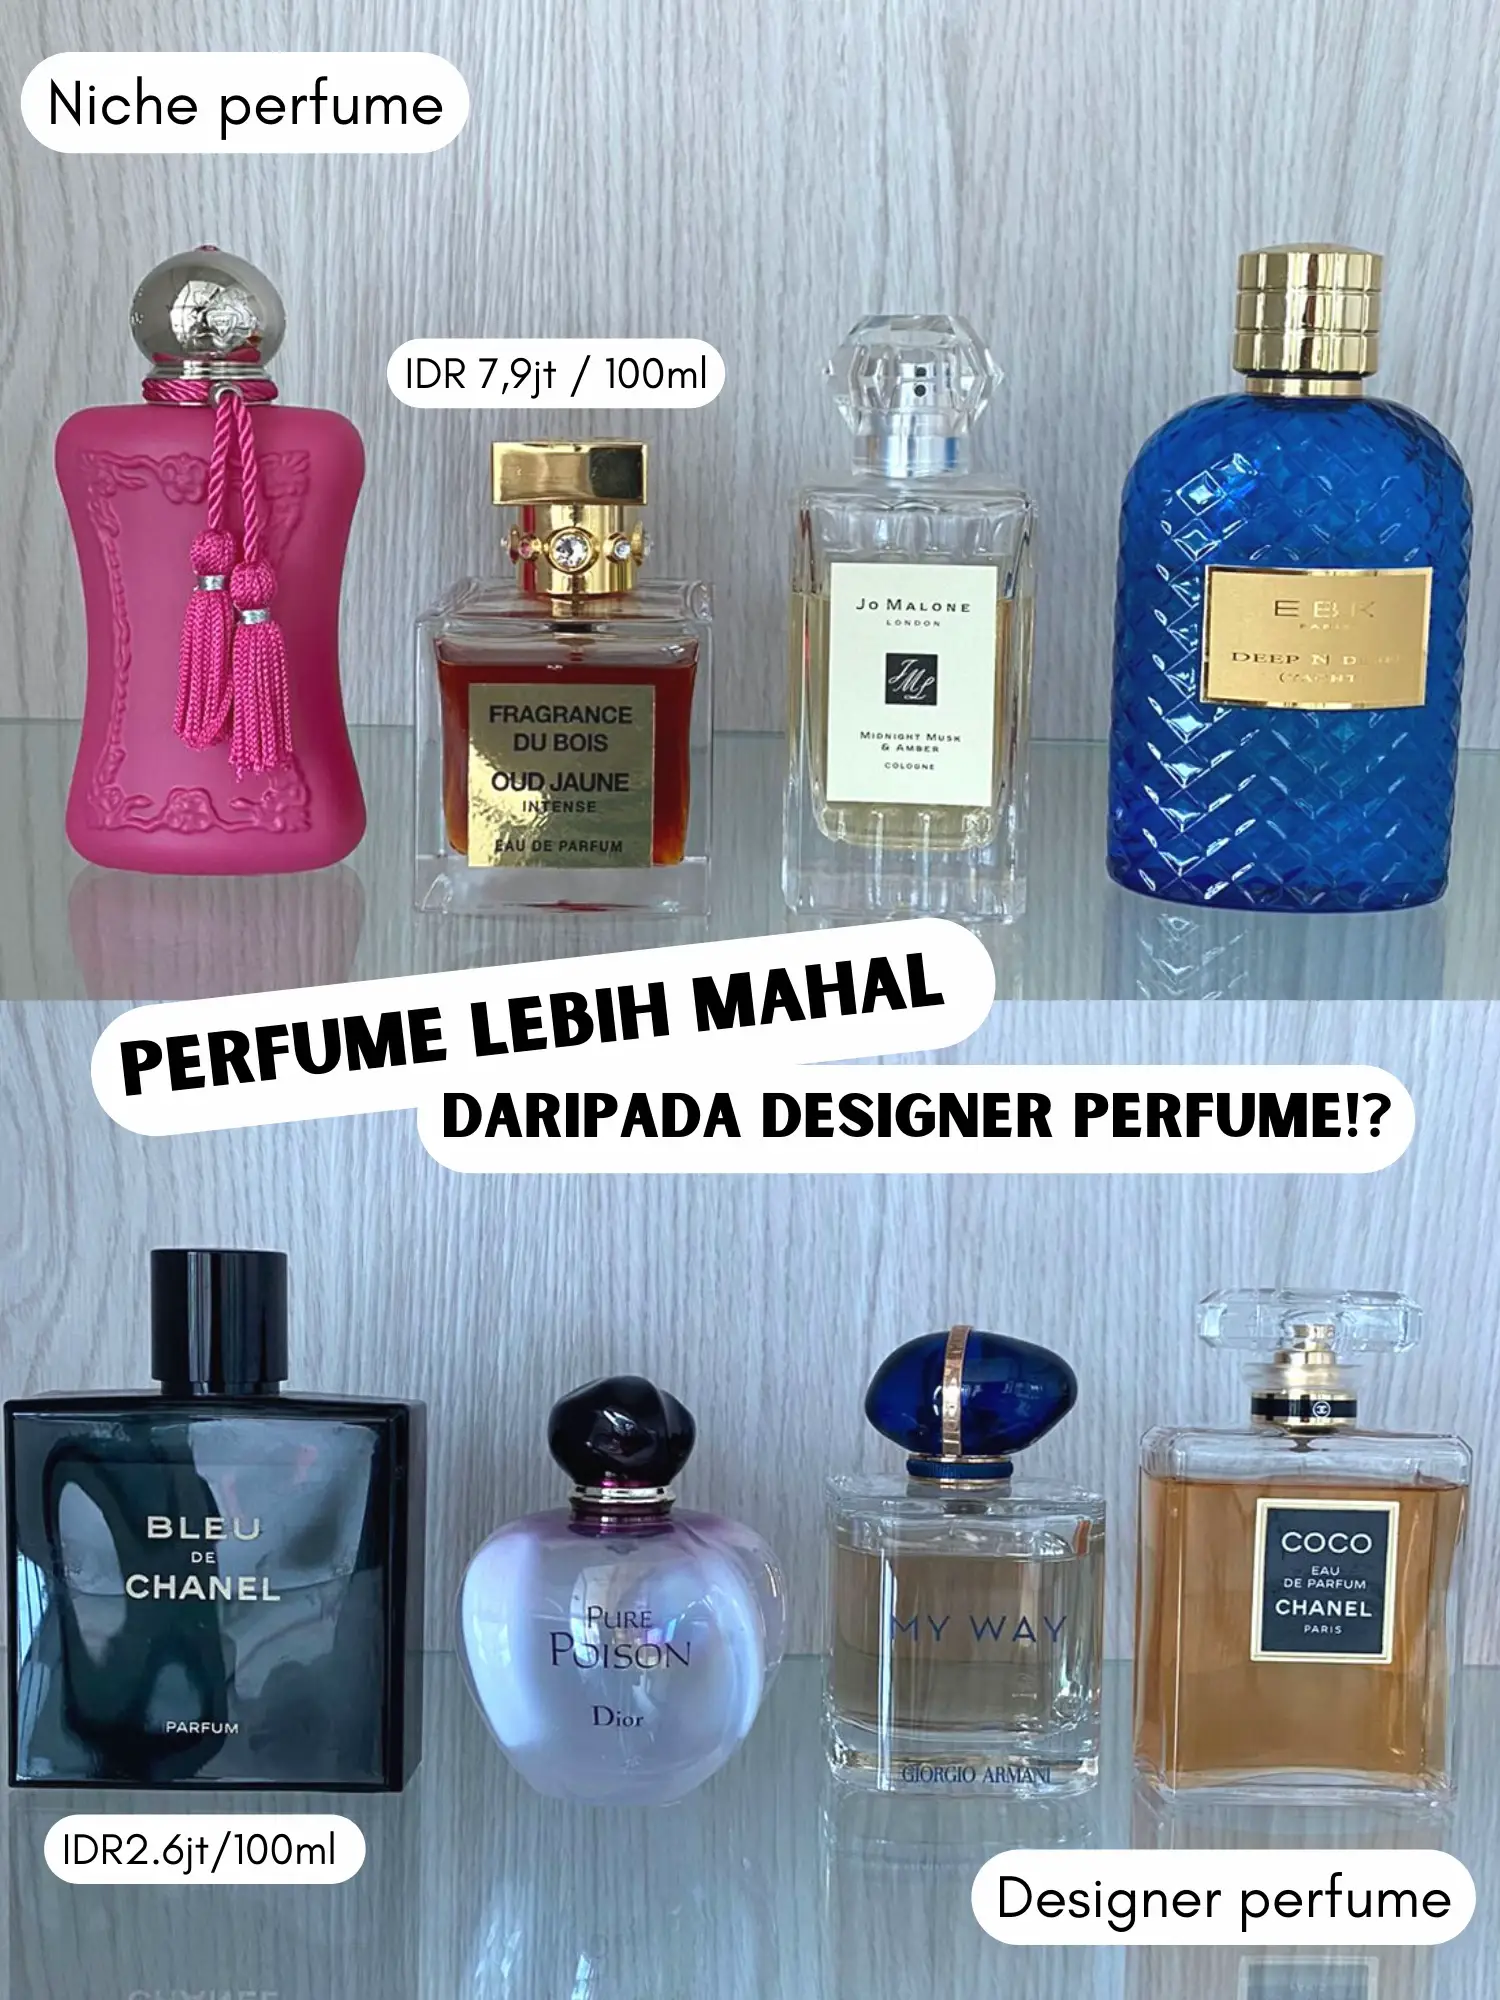 Jual Produk Parfum Louis Vuitton Rose Termurah dan Terlengkap